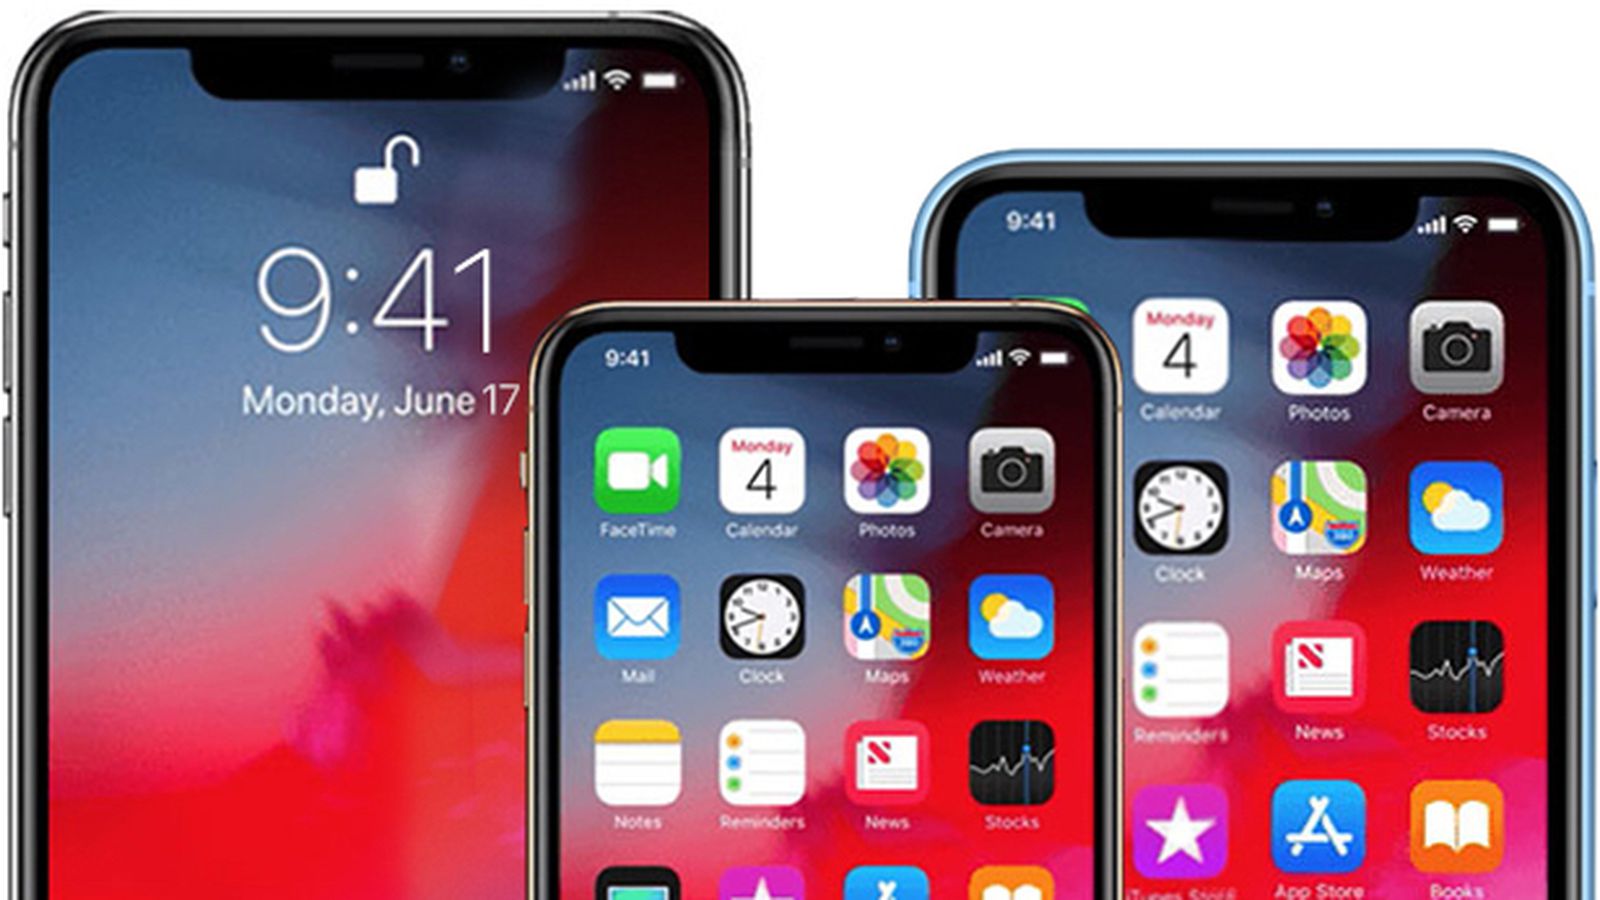 All Three 2020 iPhones Support 5G - iPhone 5G - Điện thoại hỗ trợ 5G đã đến rồi! Cùng trải nghiệm độ truyền tải thông tin cực kỳ nhanh chóng và ổn định hoàn hảo với chiếc điện thoại mới nhất của bạn. Hình ảnh sắc nét, âm thanh rõ ràng, chơi game, xem phim cùng điện thoại của bạn sẽ trở nên thú vị và hoàn hảo hơn. Hãy bắt đầu trải nghiệm iPhone 5G ngay hôm nay!